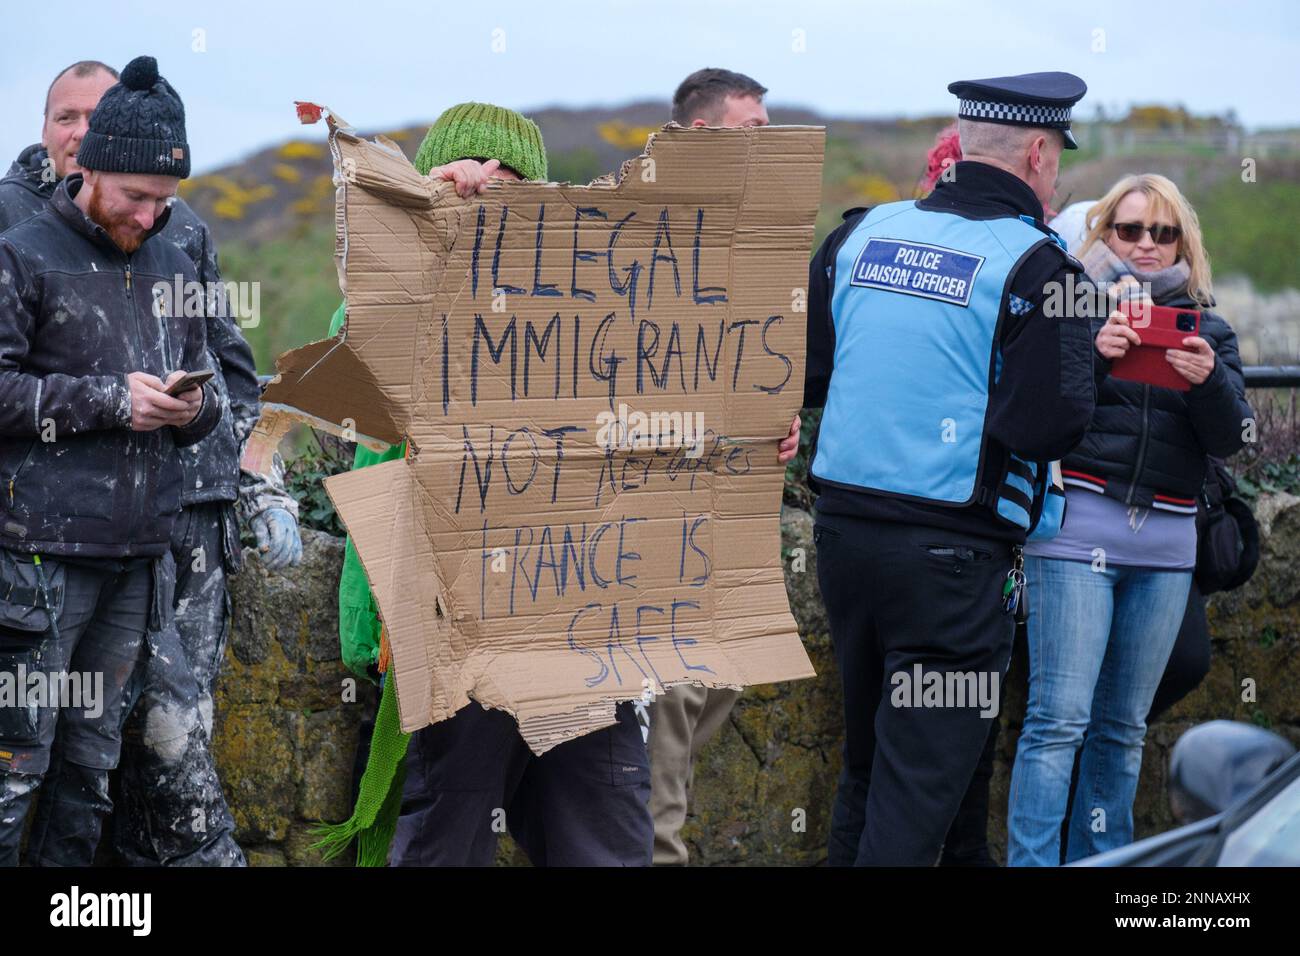 Menschen nehmen an einem Protest Teil, der von der rechtsextremen Gruppe Patriotic Alternative organisiert wird, während einer Demonstration vor dem Beresford Hotel in Newquay, Cornwall, wo Flüchtlinge untergebracht sind. Foto: Samstag, 25. Februar 2023. Stockfoto